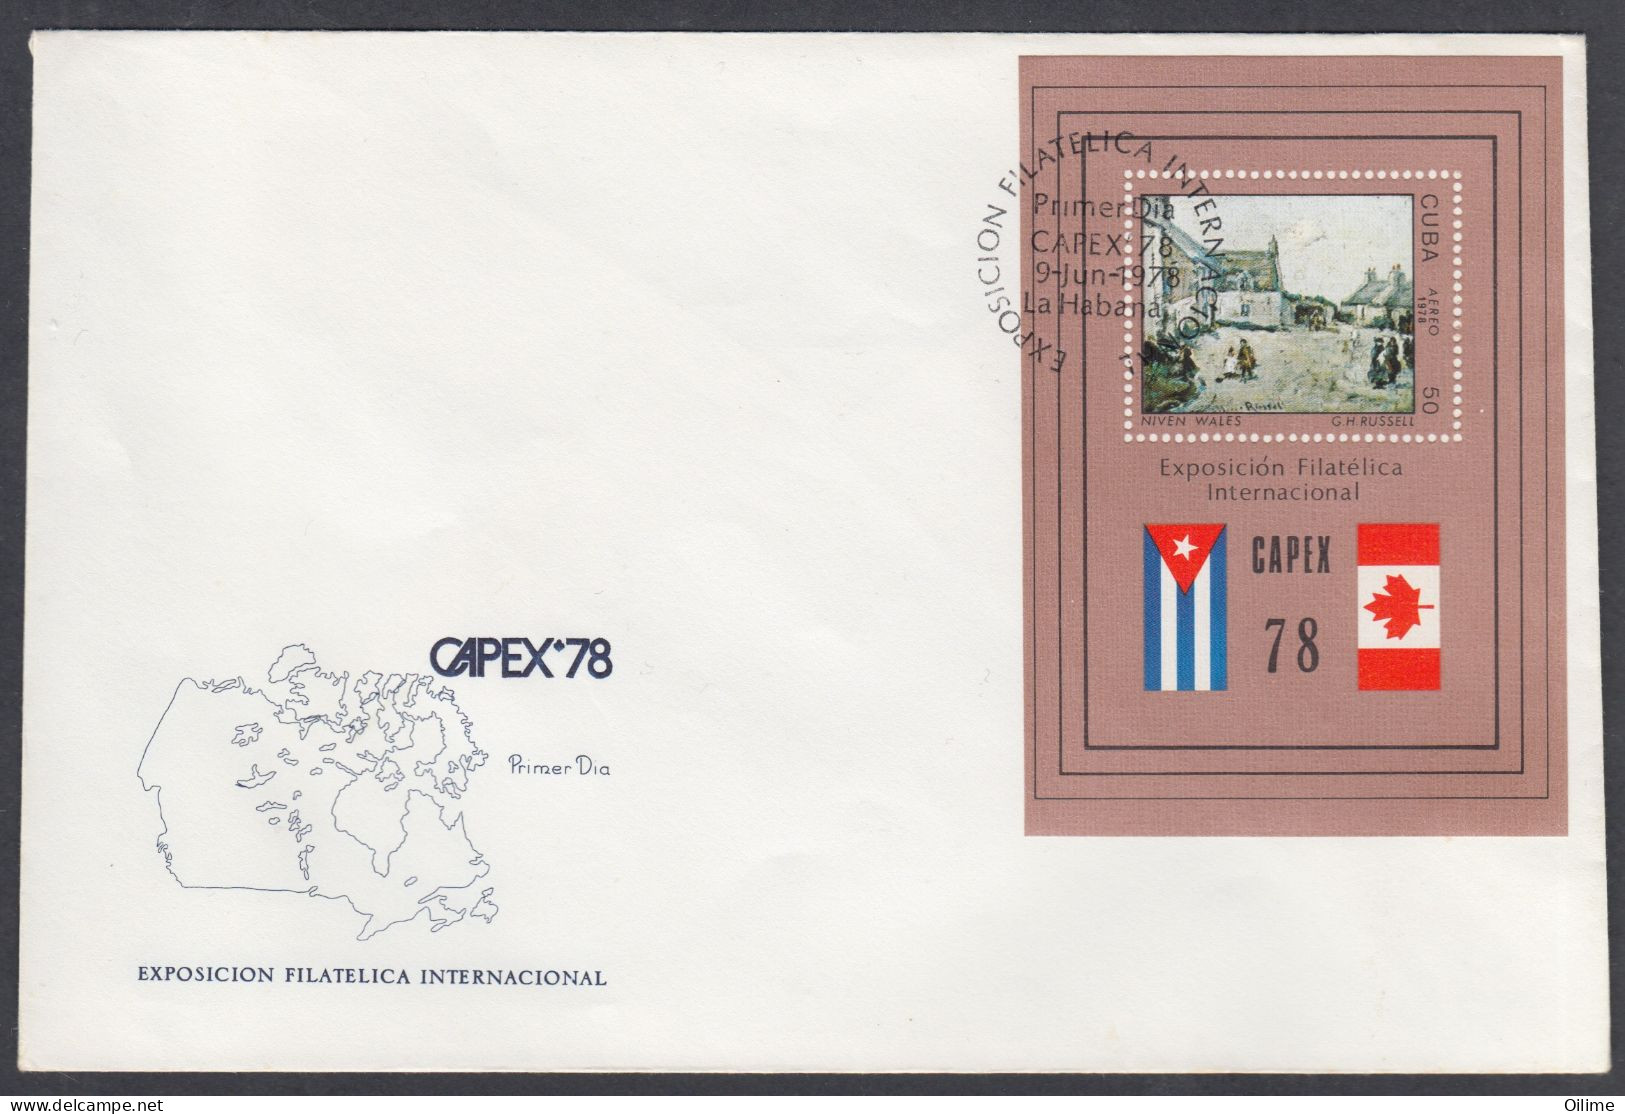 FDC CUBA 1978. HB EXPOSICIÓN FILATÉLICA "CAPEX 78". TORONTO CANADÁ EDIFIL 2470 - FDC